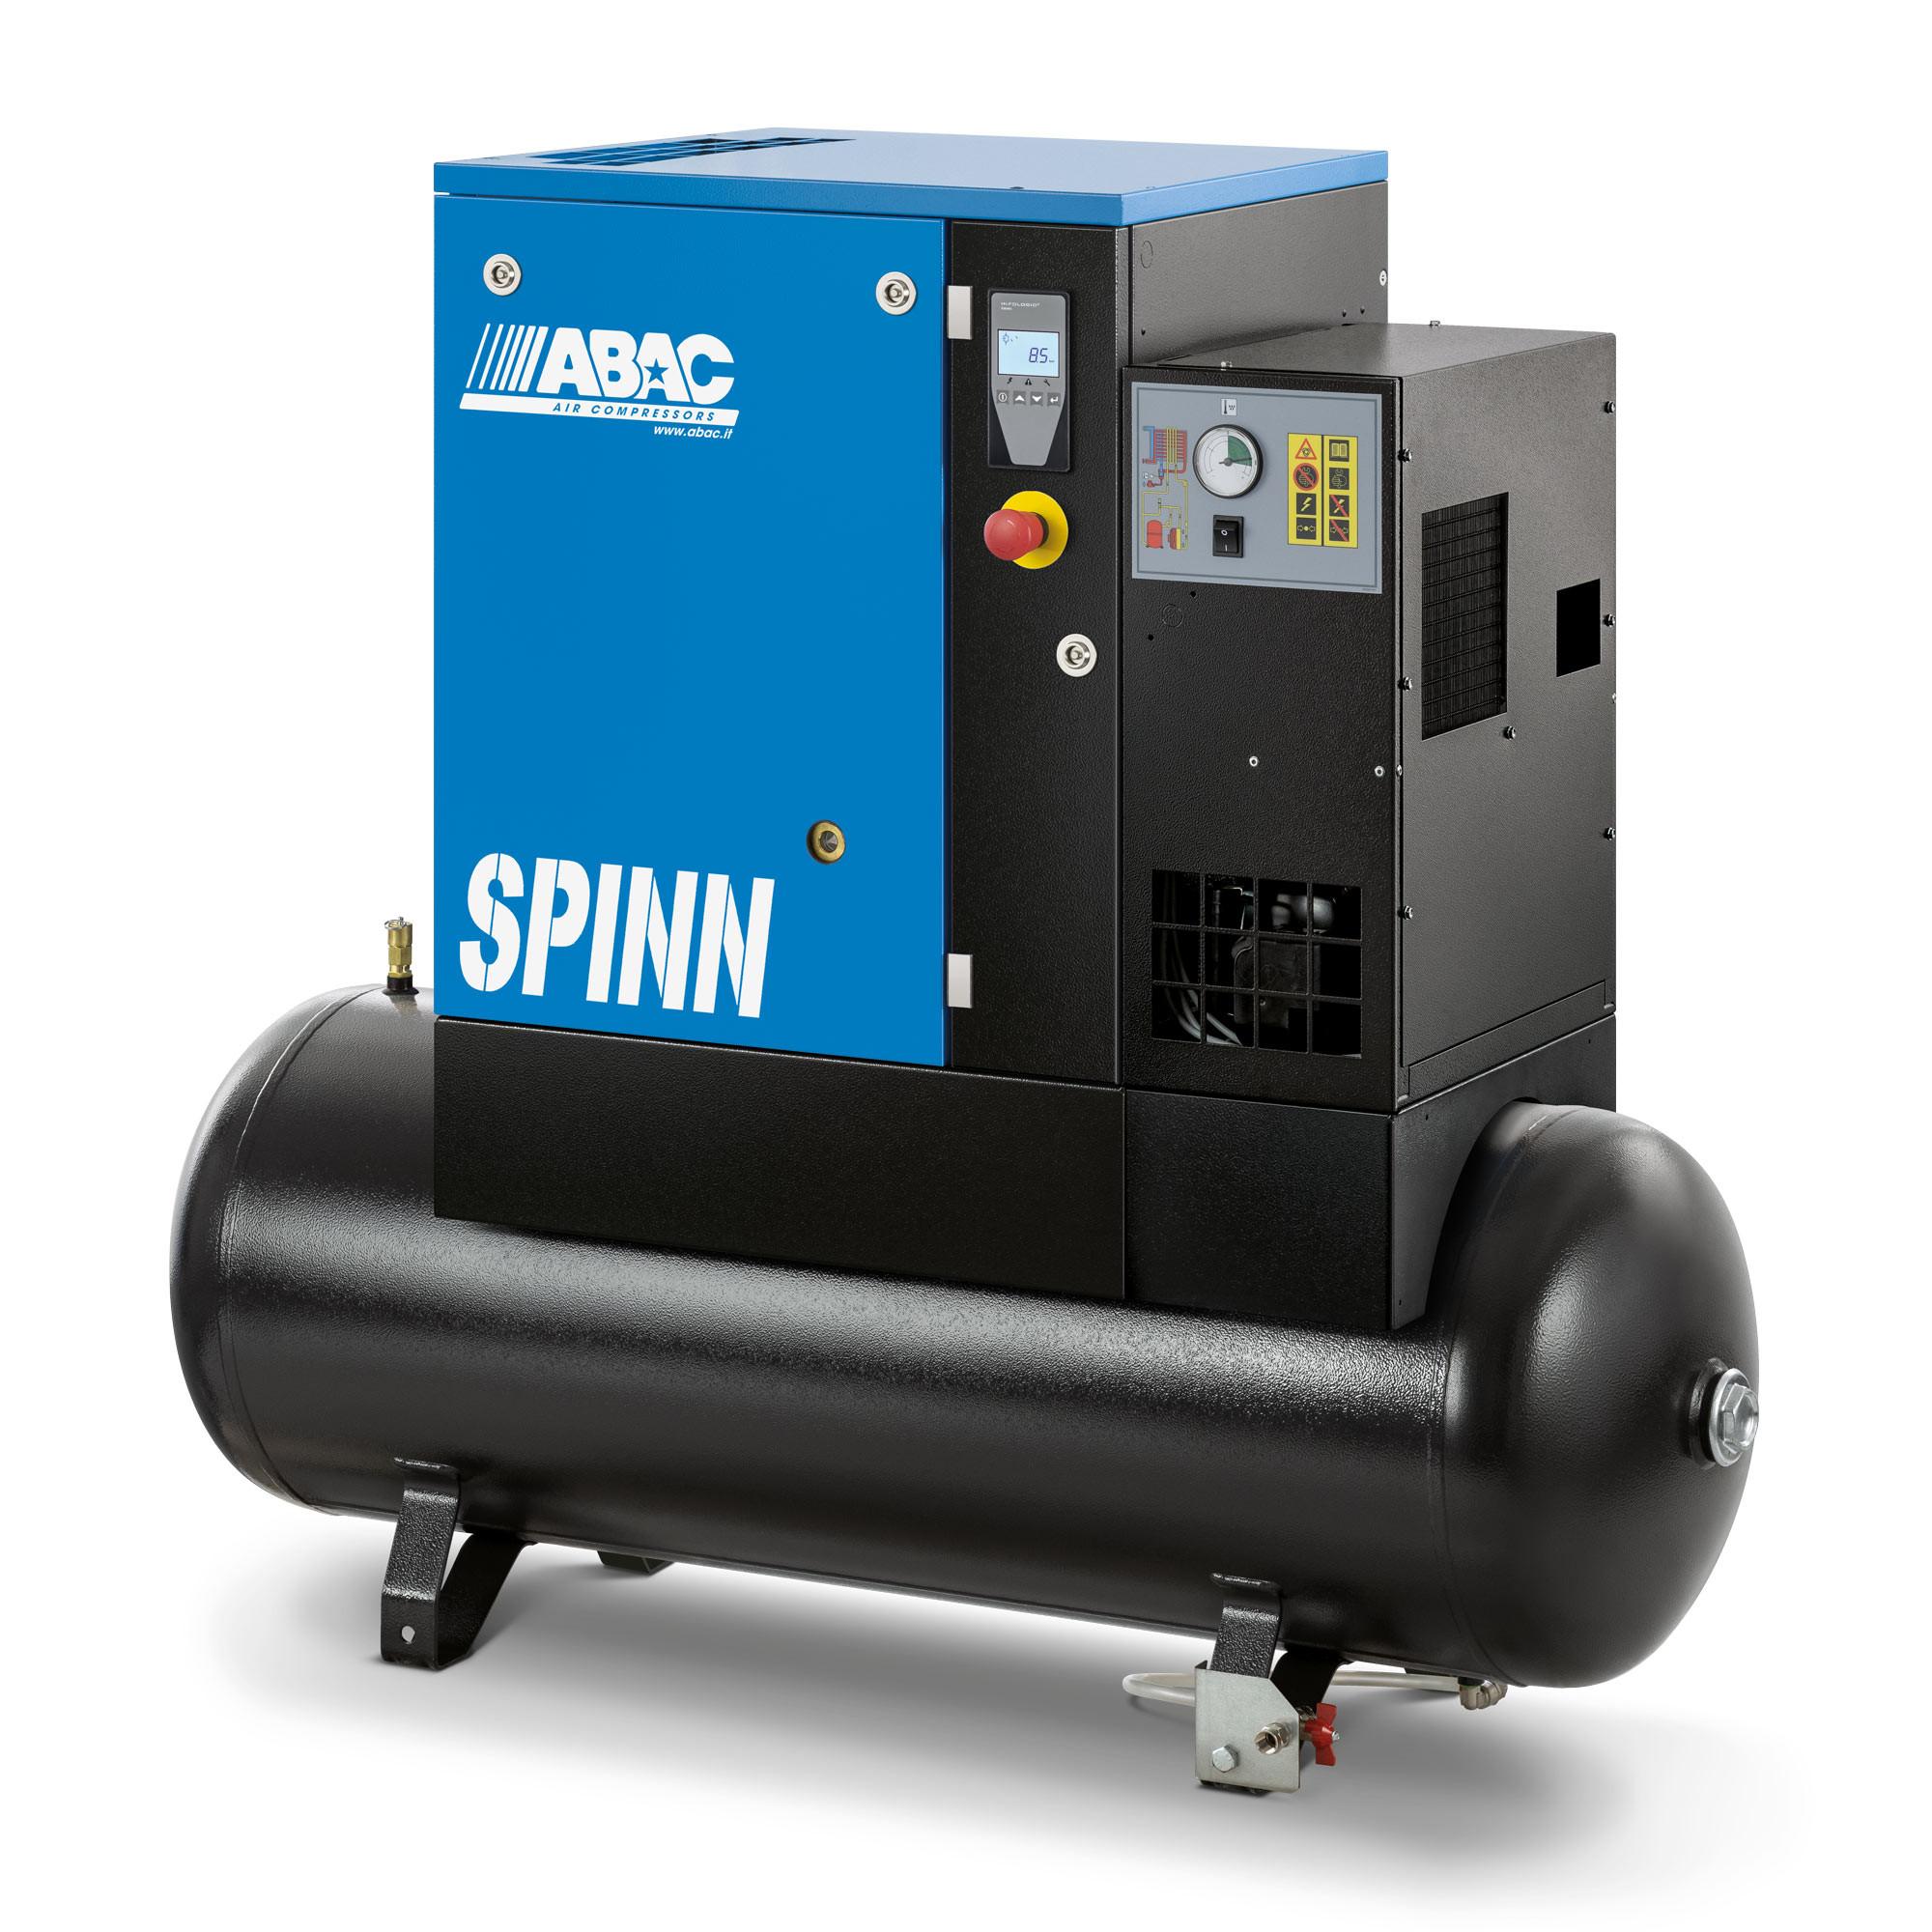 螺杆式空气压缩机- spinn3e10 400/50K 270 E CE接收器，安装干燥机270L 12.9CFM 10Bar 4HP